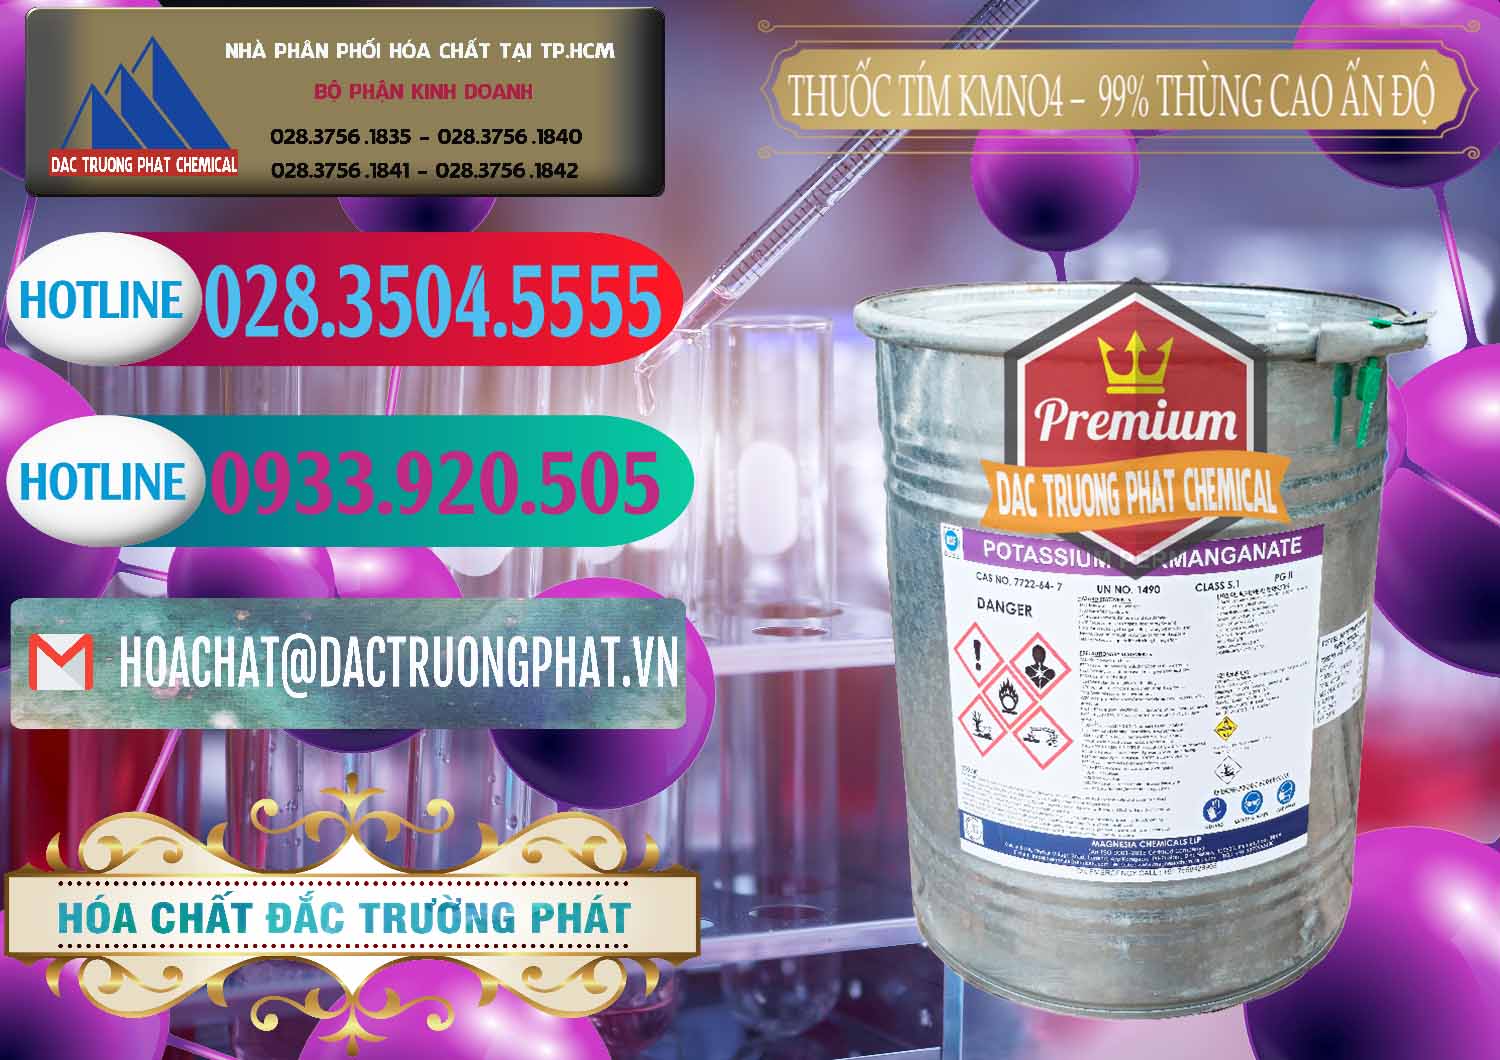 Nhà phân phối ( bán ) Thuốc Tím - KMNO4 Thùng Cao 99% Magnesia Chemicals Ấn Độ India - 0164 - Nơi cung cấp & phân phối hóa chất tại TP.HCM - truongphat.vn